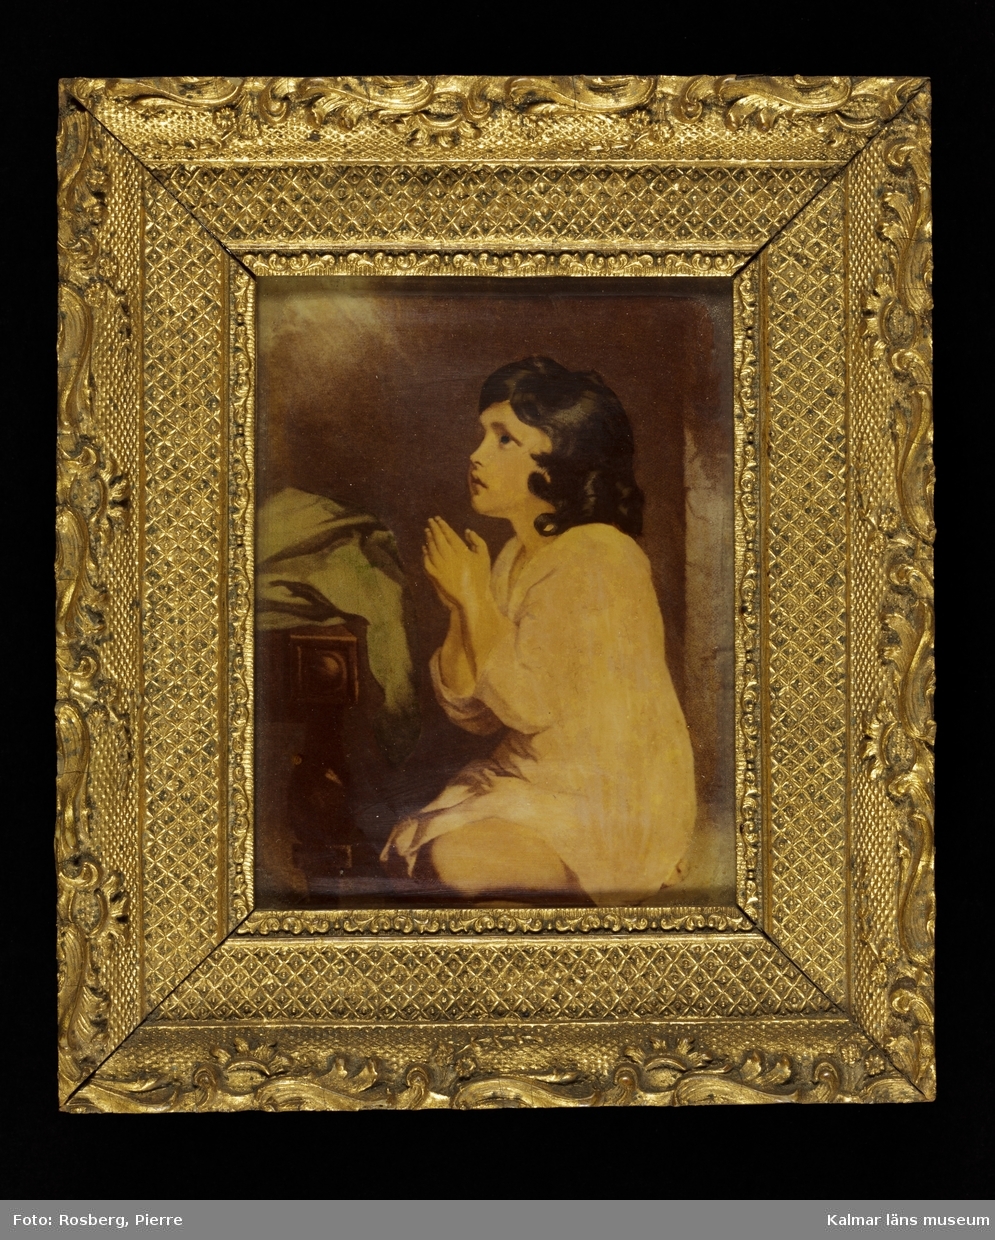 KLM 8981 Tavla. Ramad. Målning på glas. Motiv med bedjande gosse. Utförd av en fröken Liljegren i Kalmar, död på 1880-talet. Fröken Liljegren brukade måla dylika.